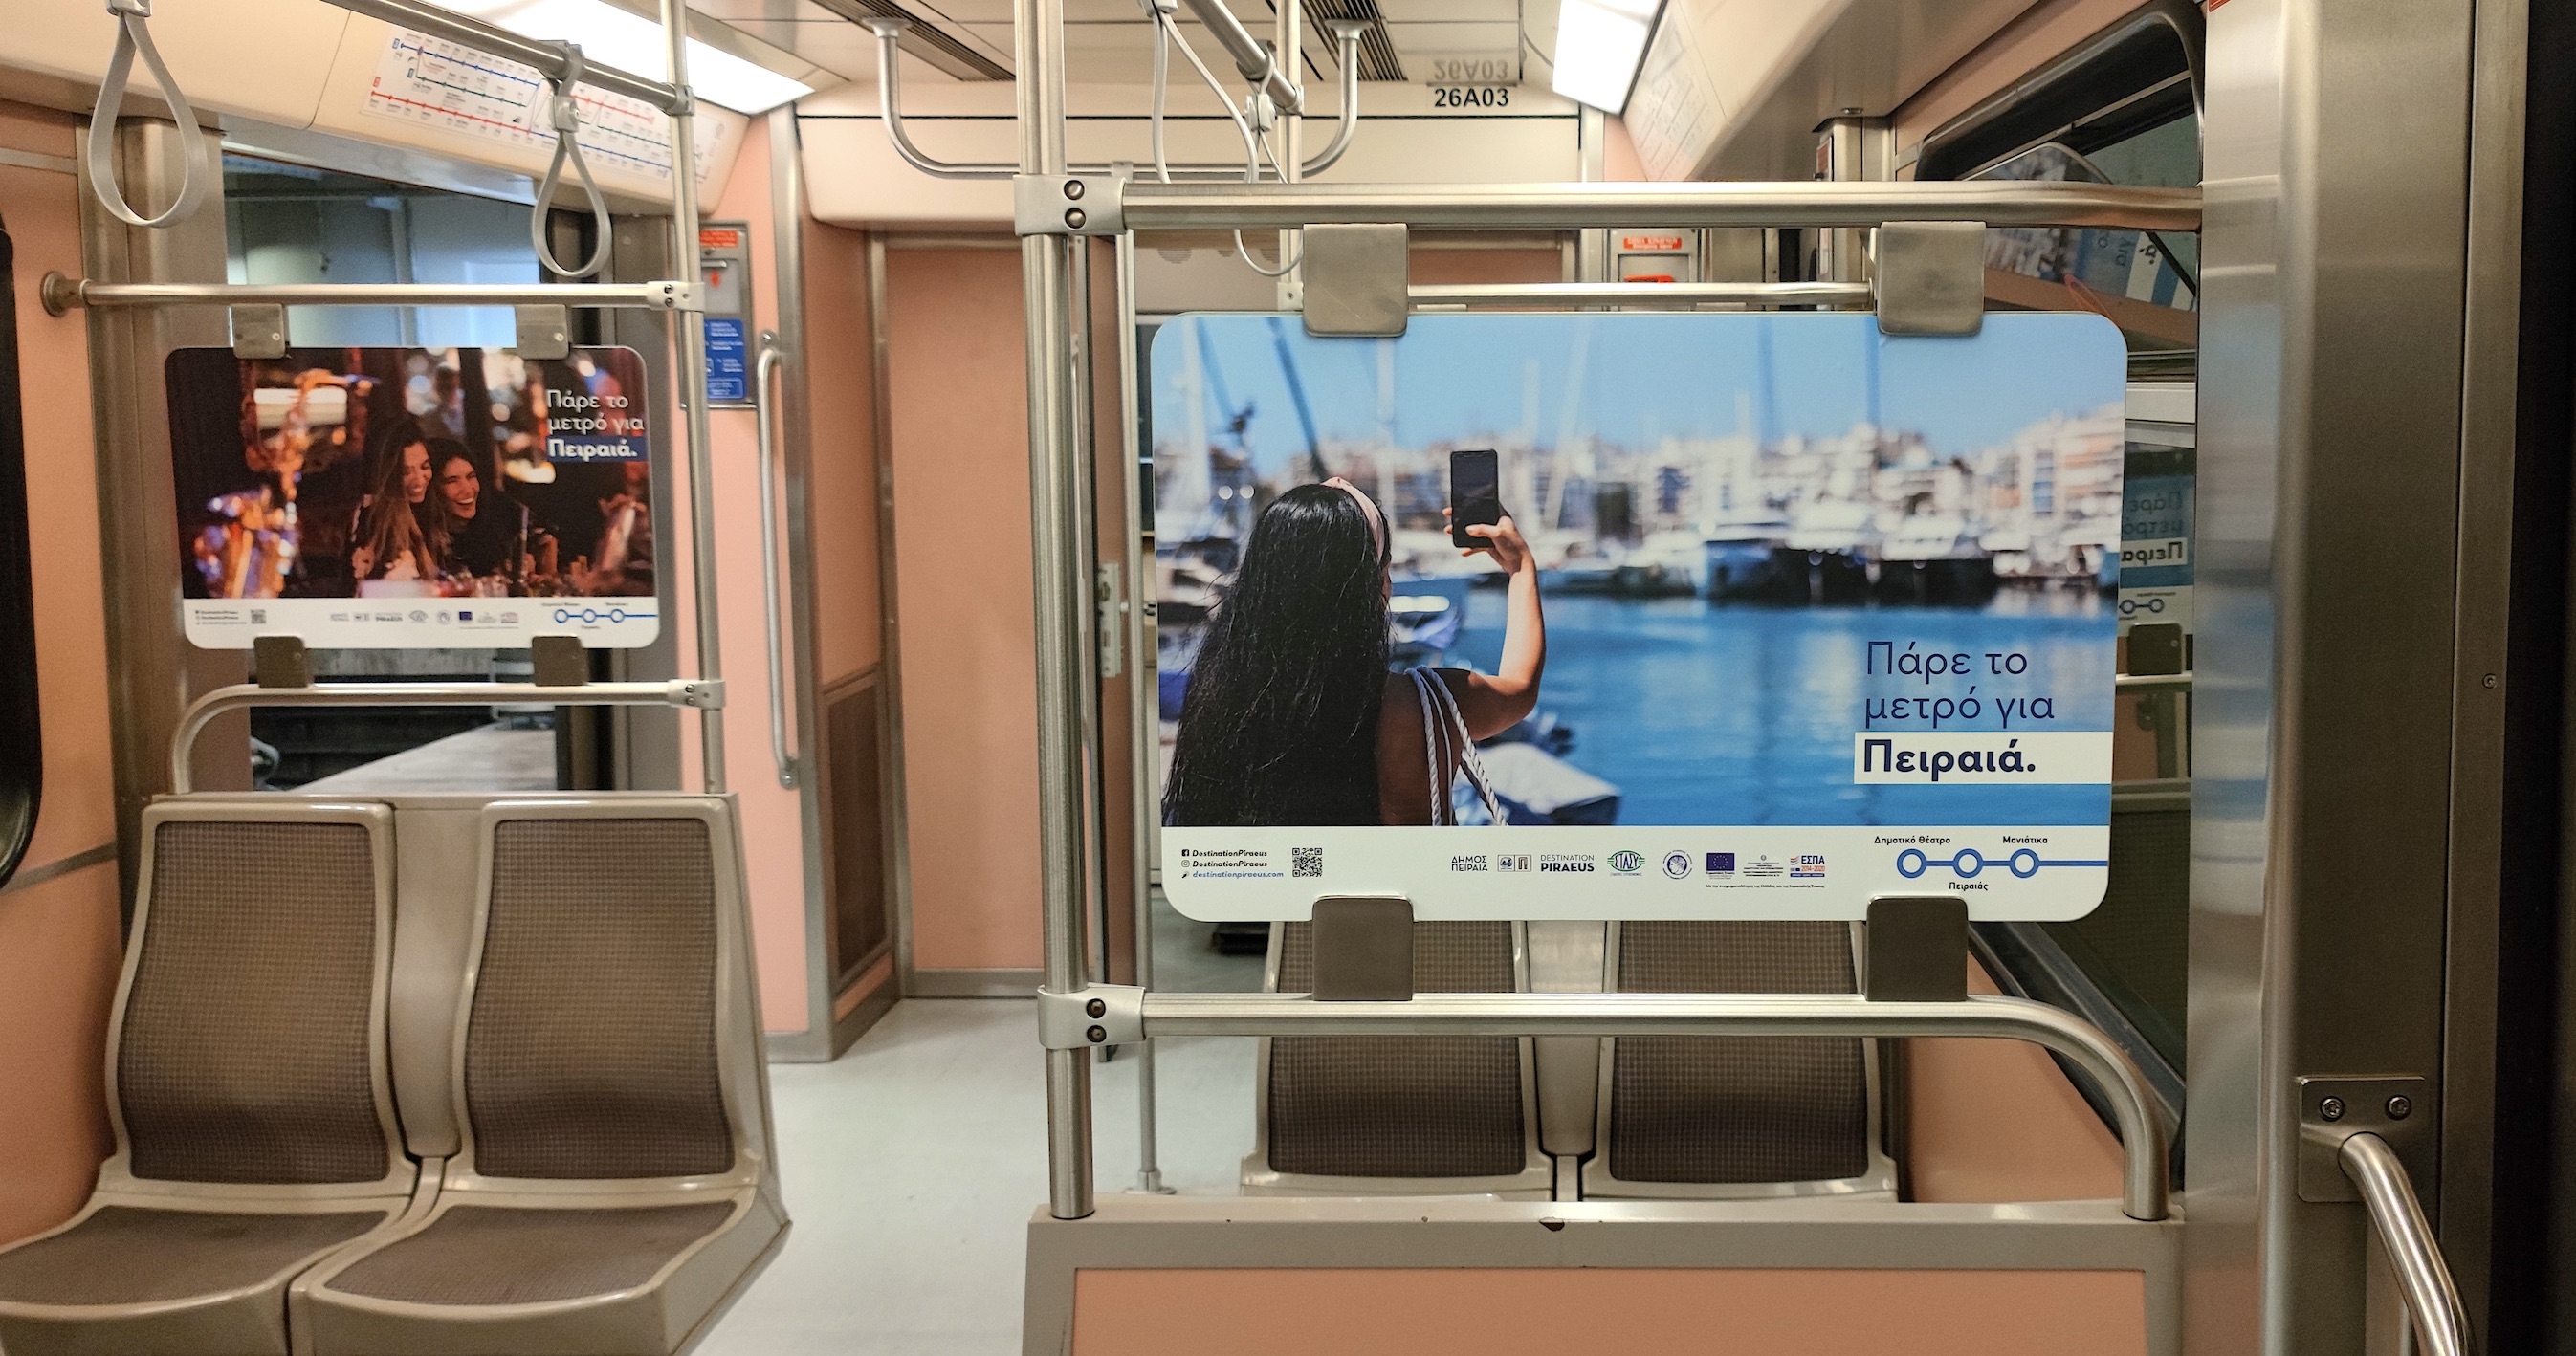 «Πάρε το μετρό για Πειραιά»: Τουριστική καμπάνια του δήμου στο μετρό